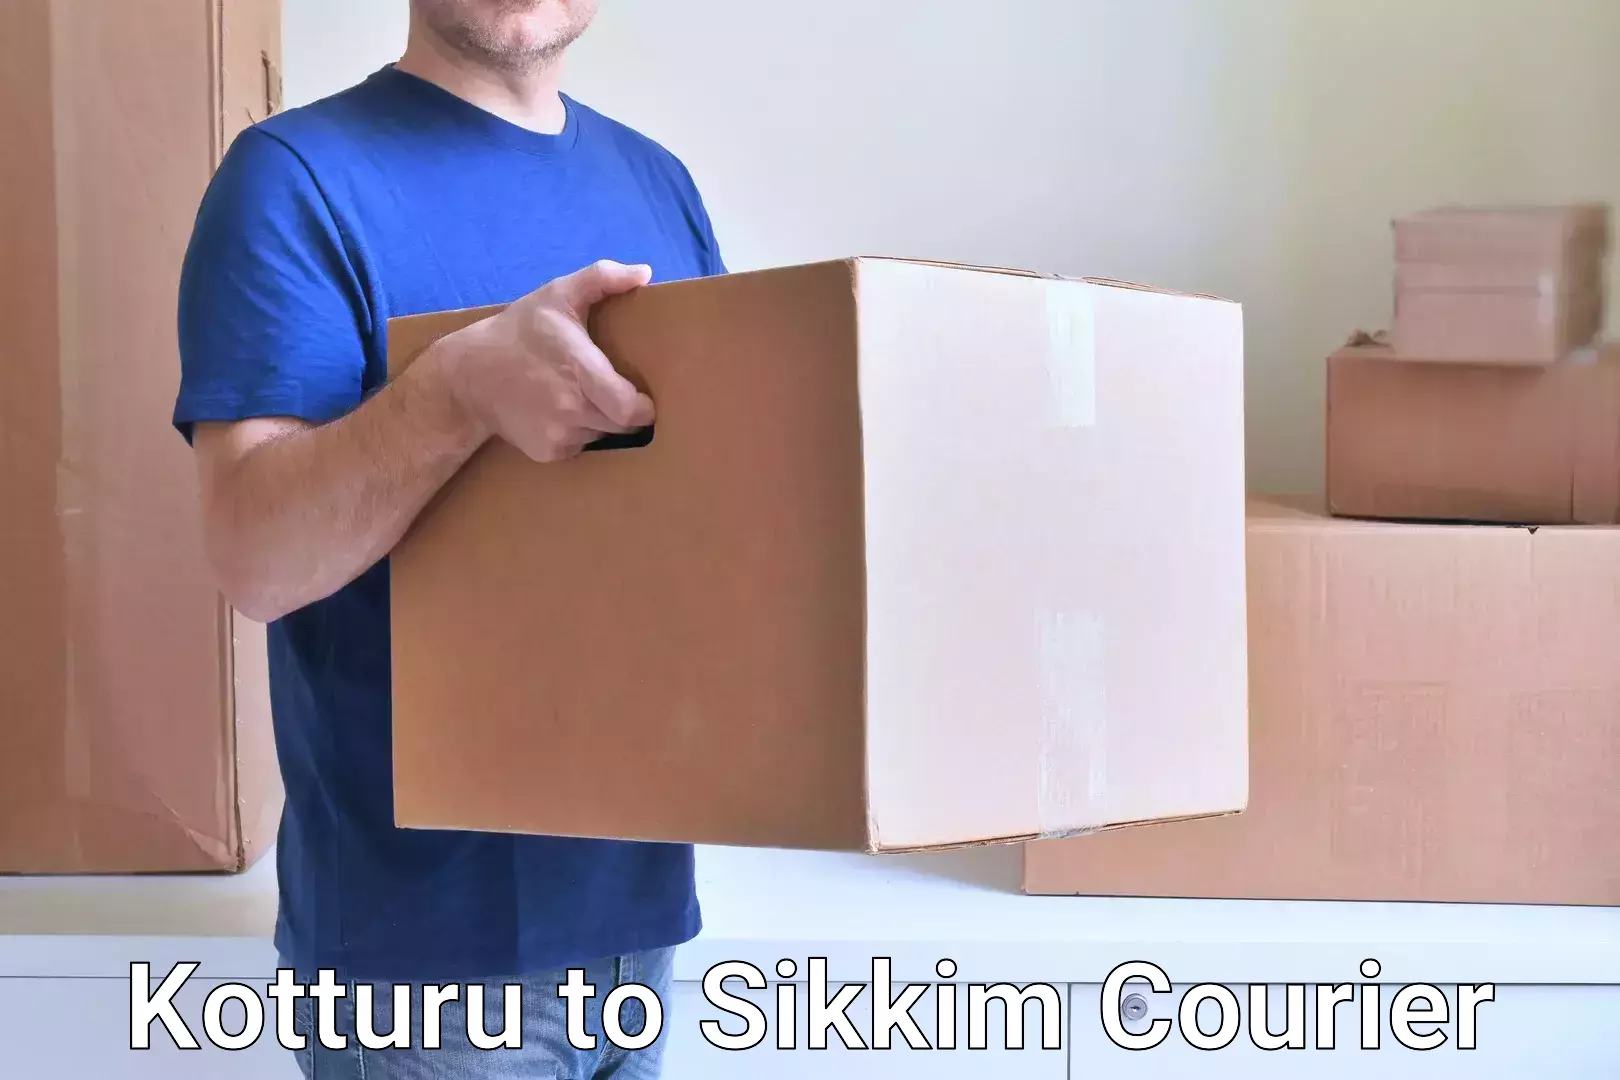 High-capacity shipping options Kotturu to Sikkim